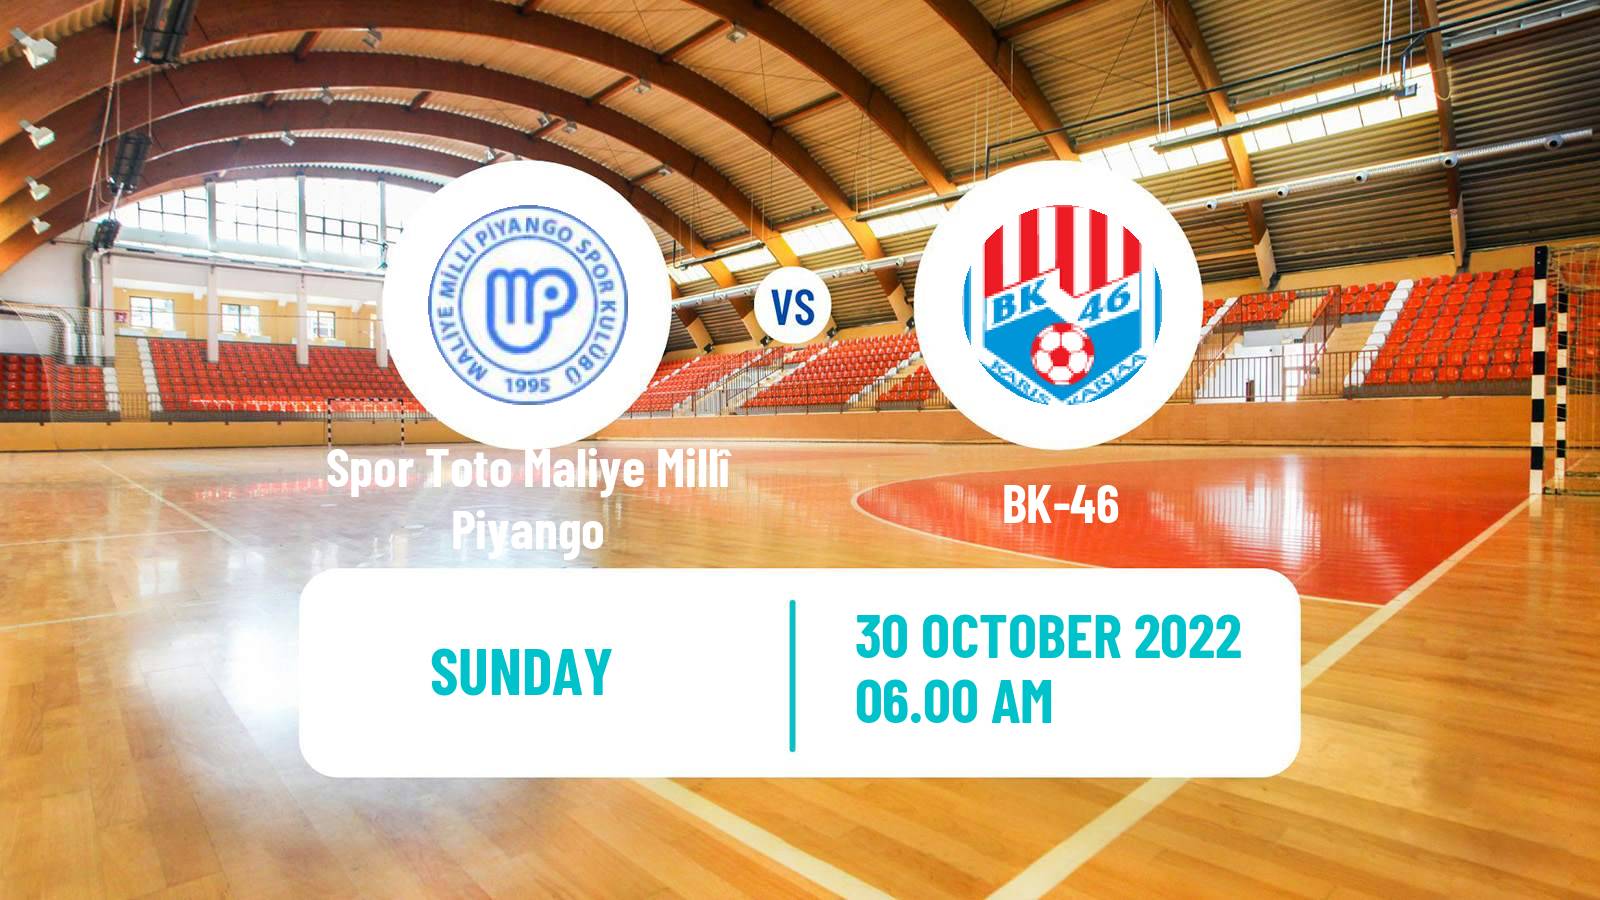 Handball EHF European Cup Spor Toto Maliye Millî Piyango - BK-46